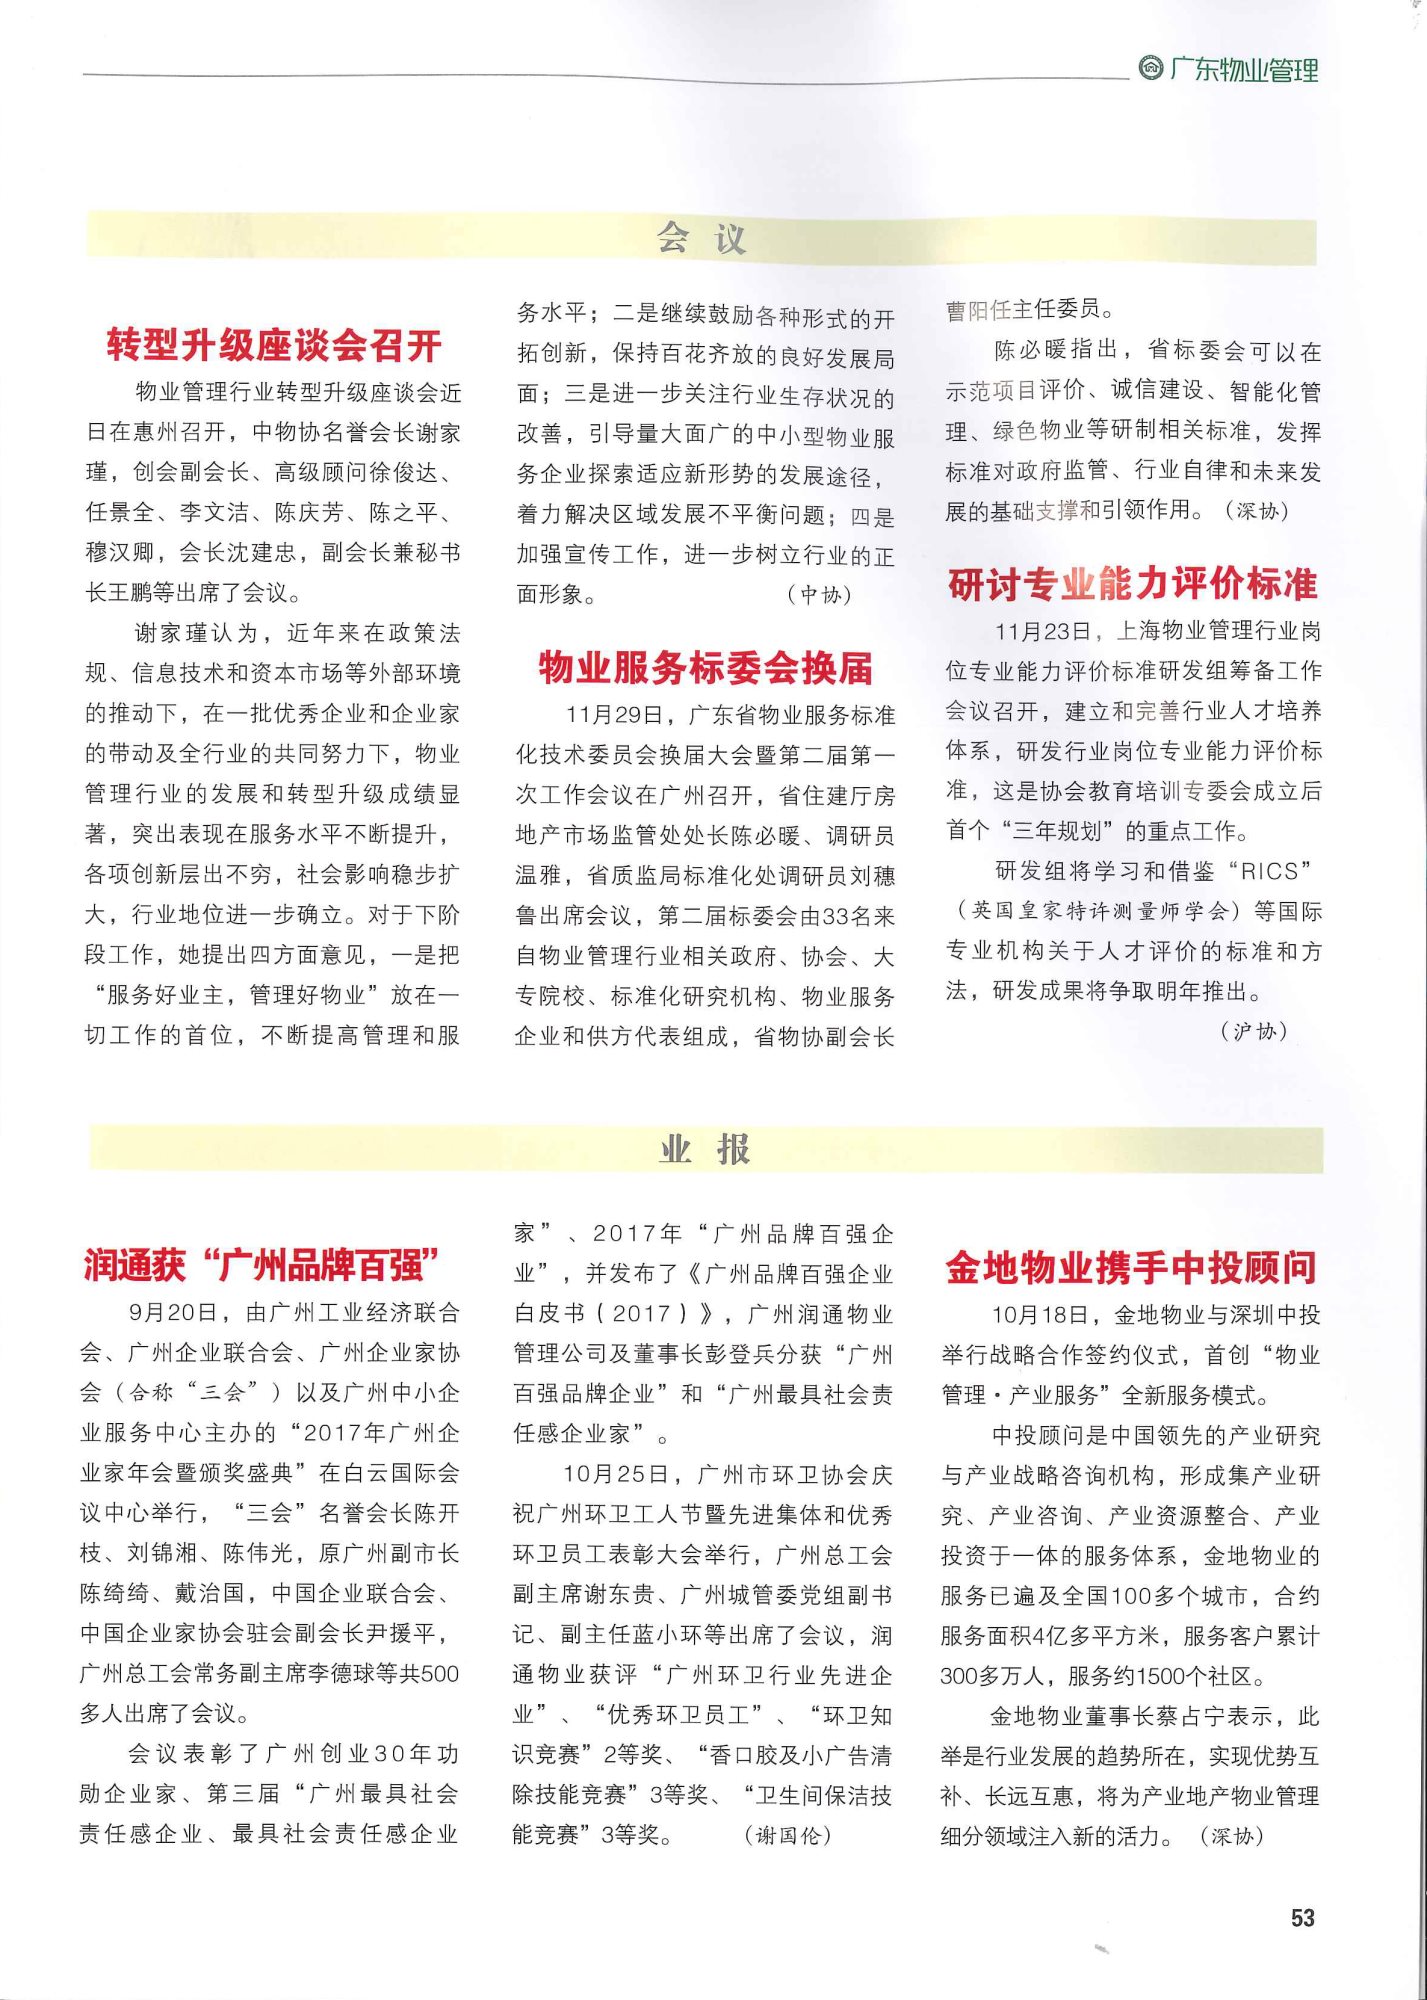 《广东物业管理》第4期2017年12月总第9期《润通获“广州品牌百强”》